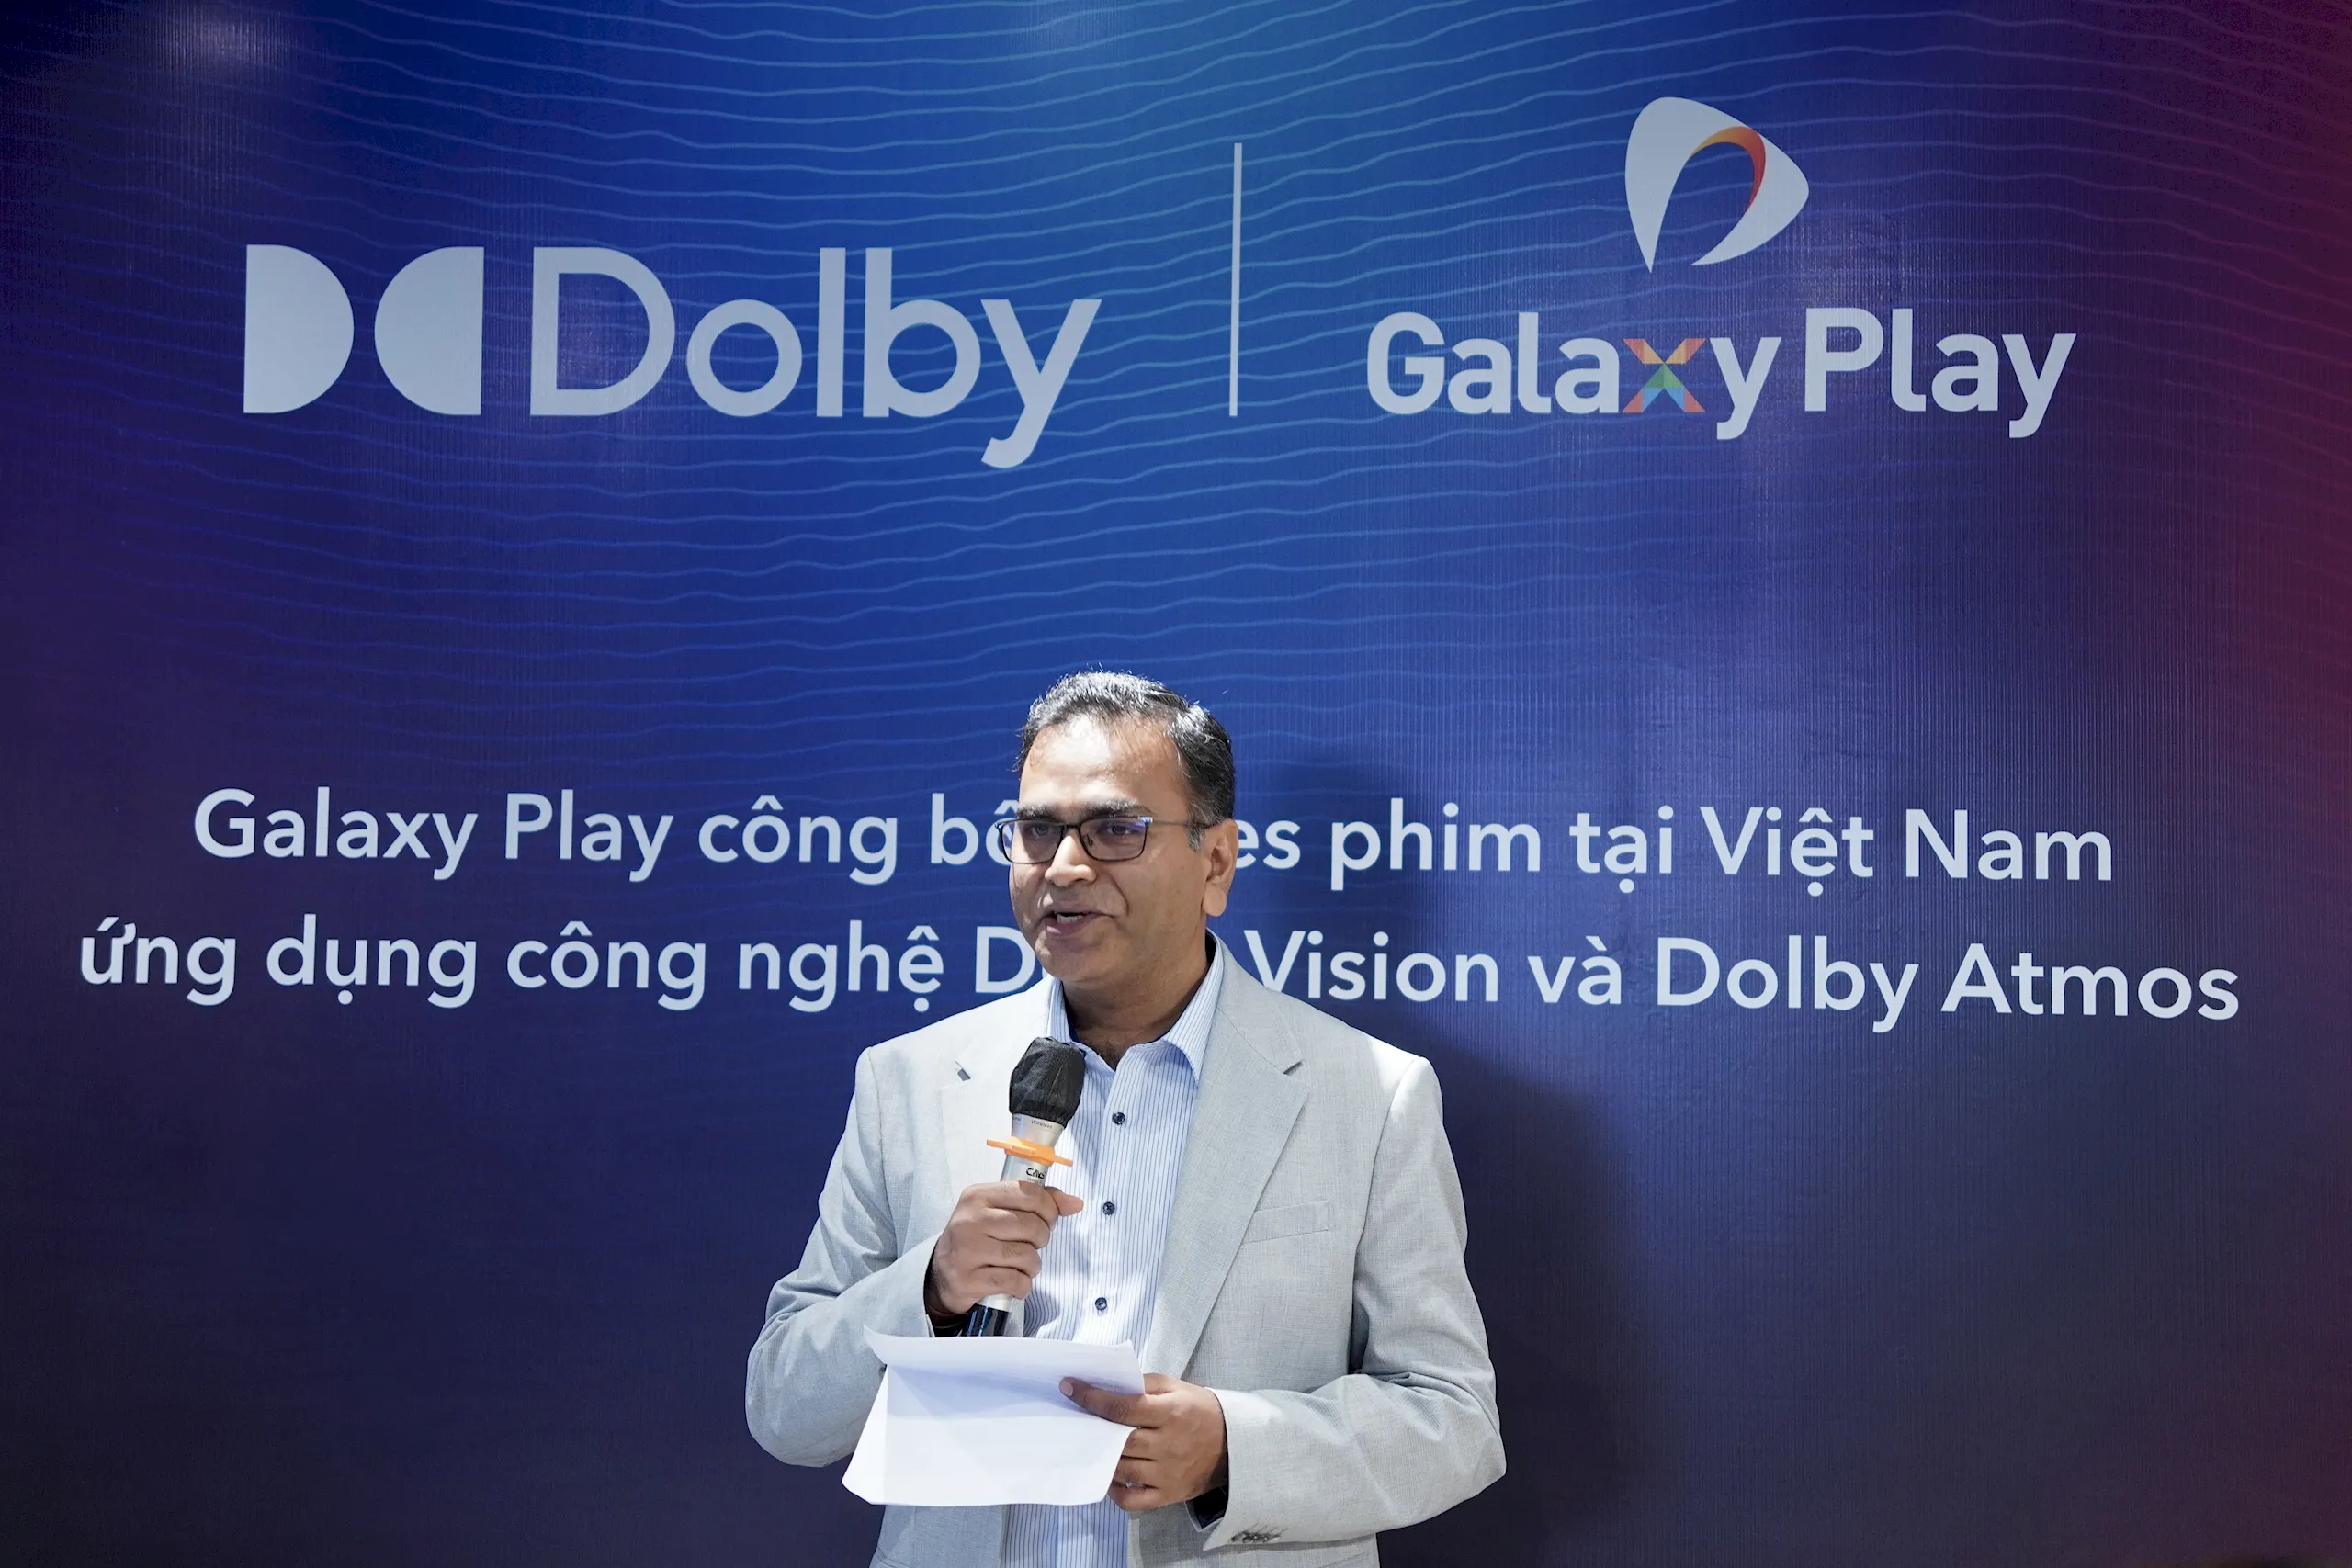 Galaxy Play công bố series phim ứng dụng công nghệ Dolby Vision và Dolby Atmos tại Việt Nam